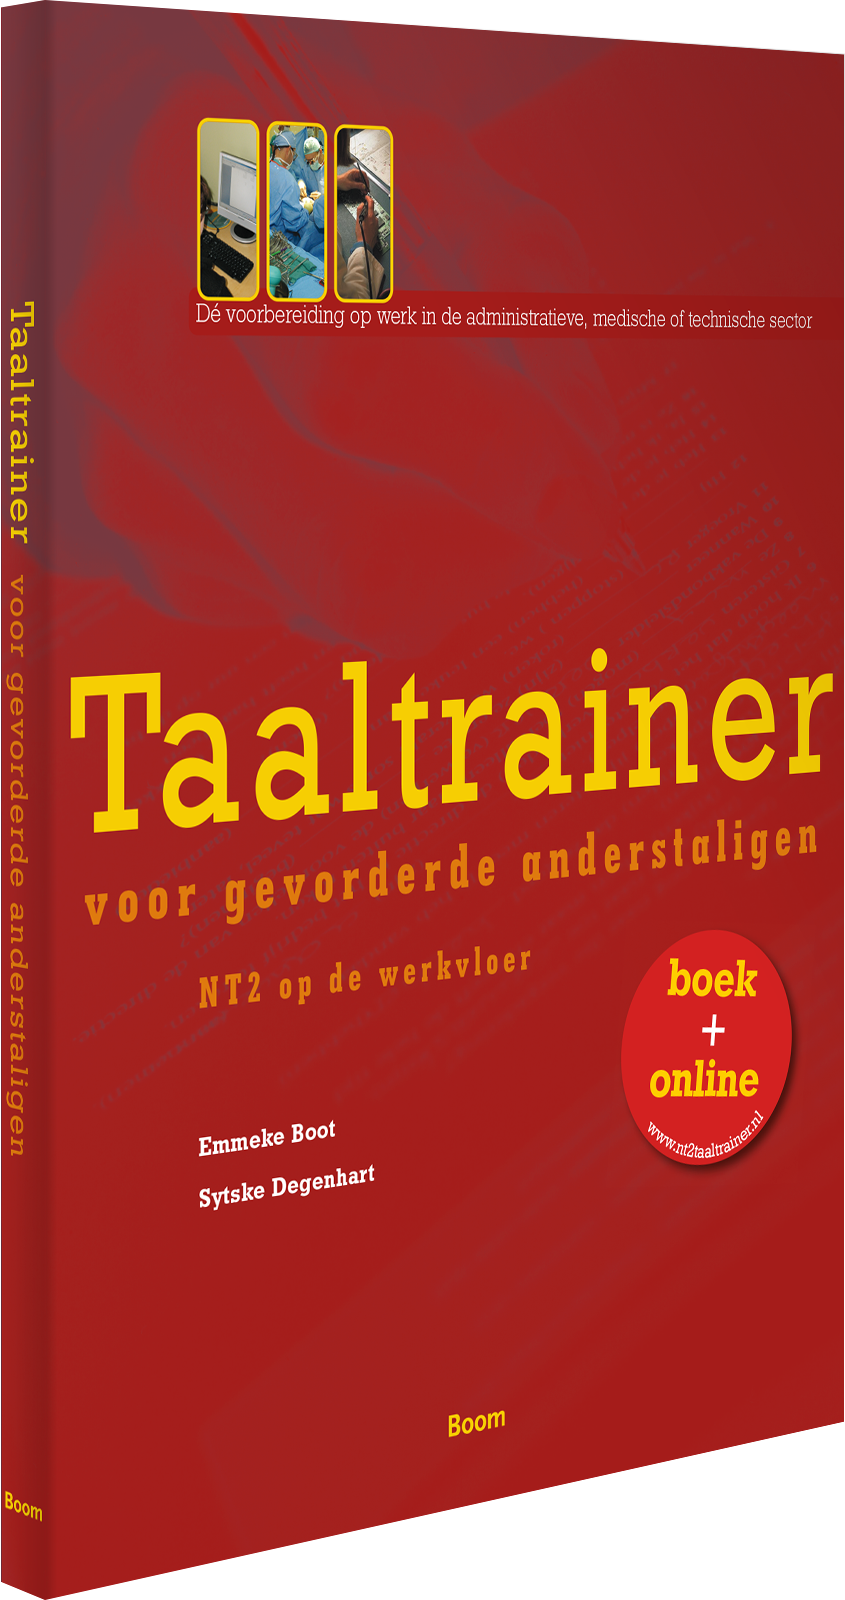 Essentiële vaardigheden voor het gebruik van het Nederlands op de werkvloer voor gevorderde anderstaligen.